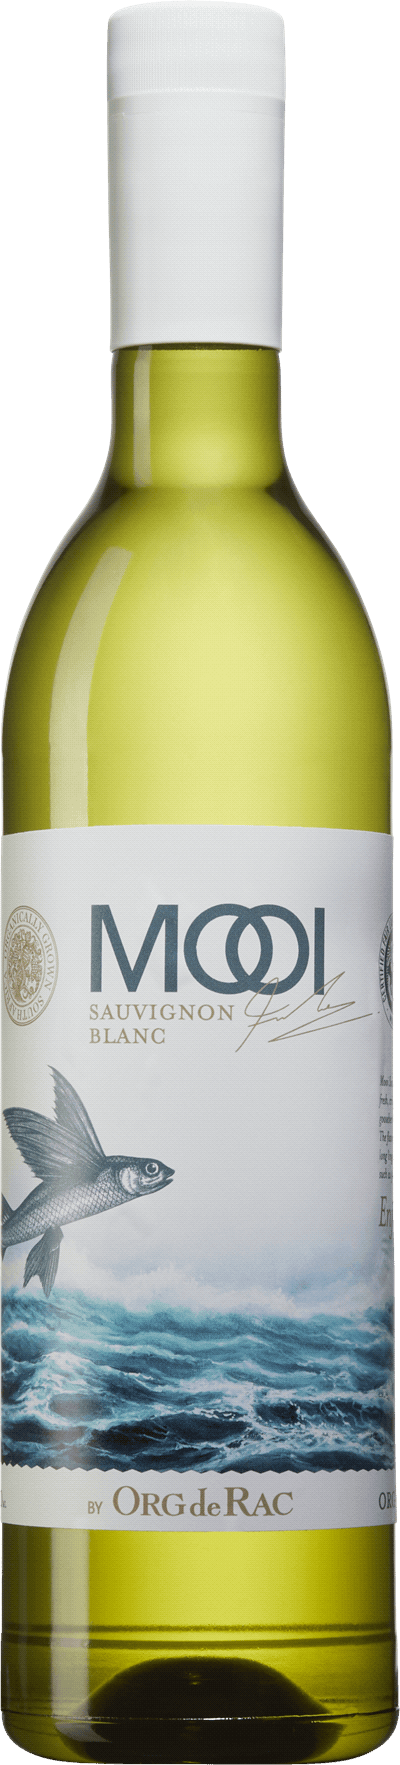 Mooi by Org de Rac Sauvignon Blanc, 2022